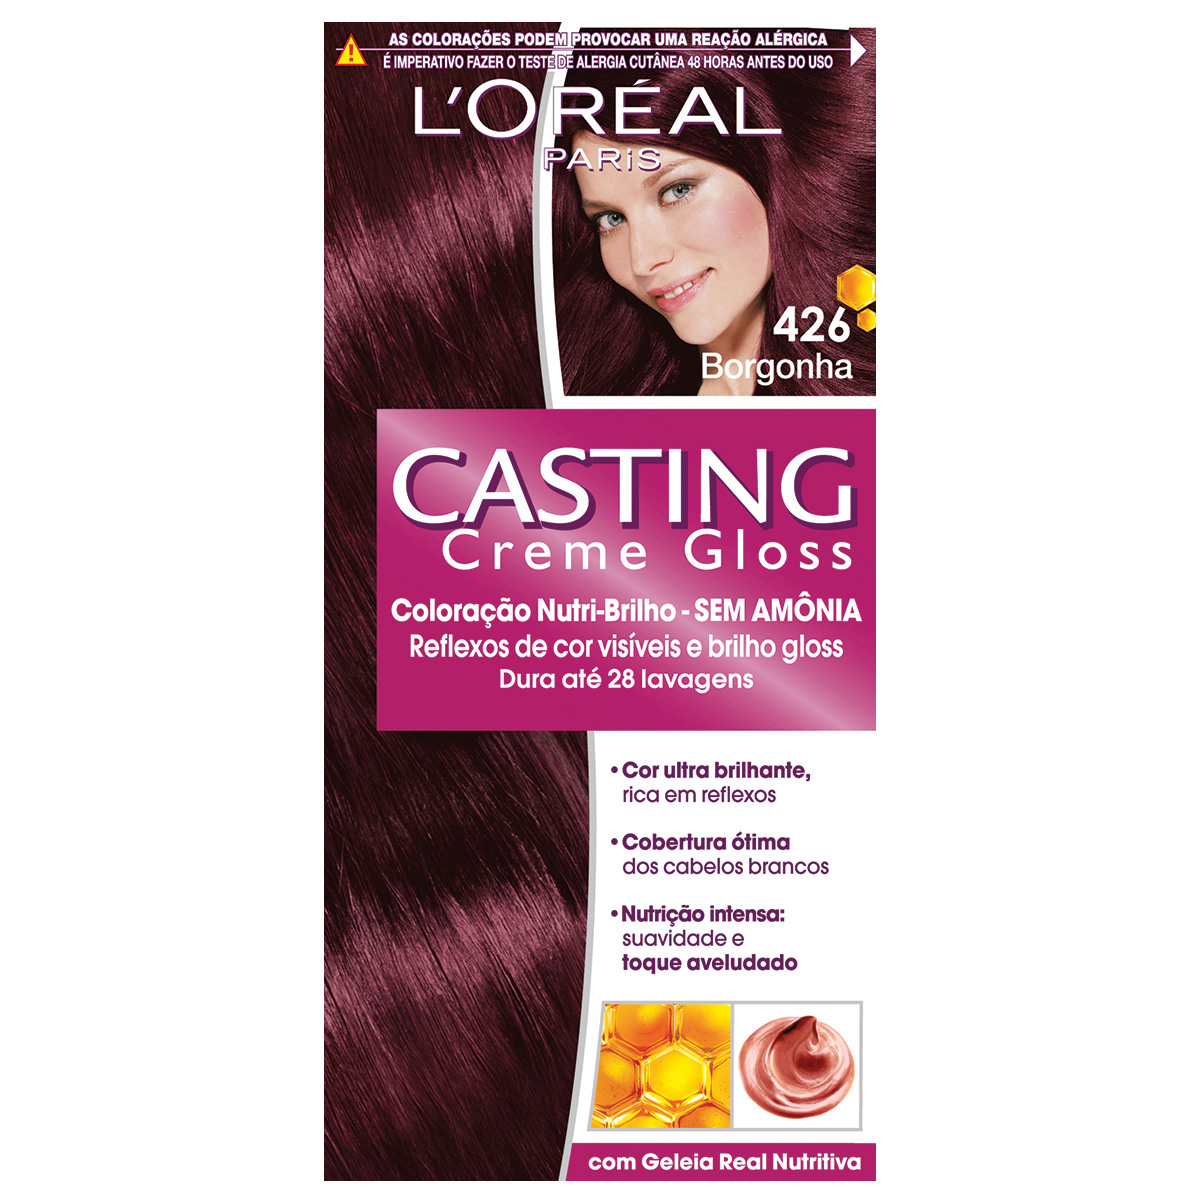 Coloração Permanente Casting Creme Gloss N° 426 Borgonha L'Oréal 1 Unidade